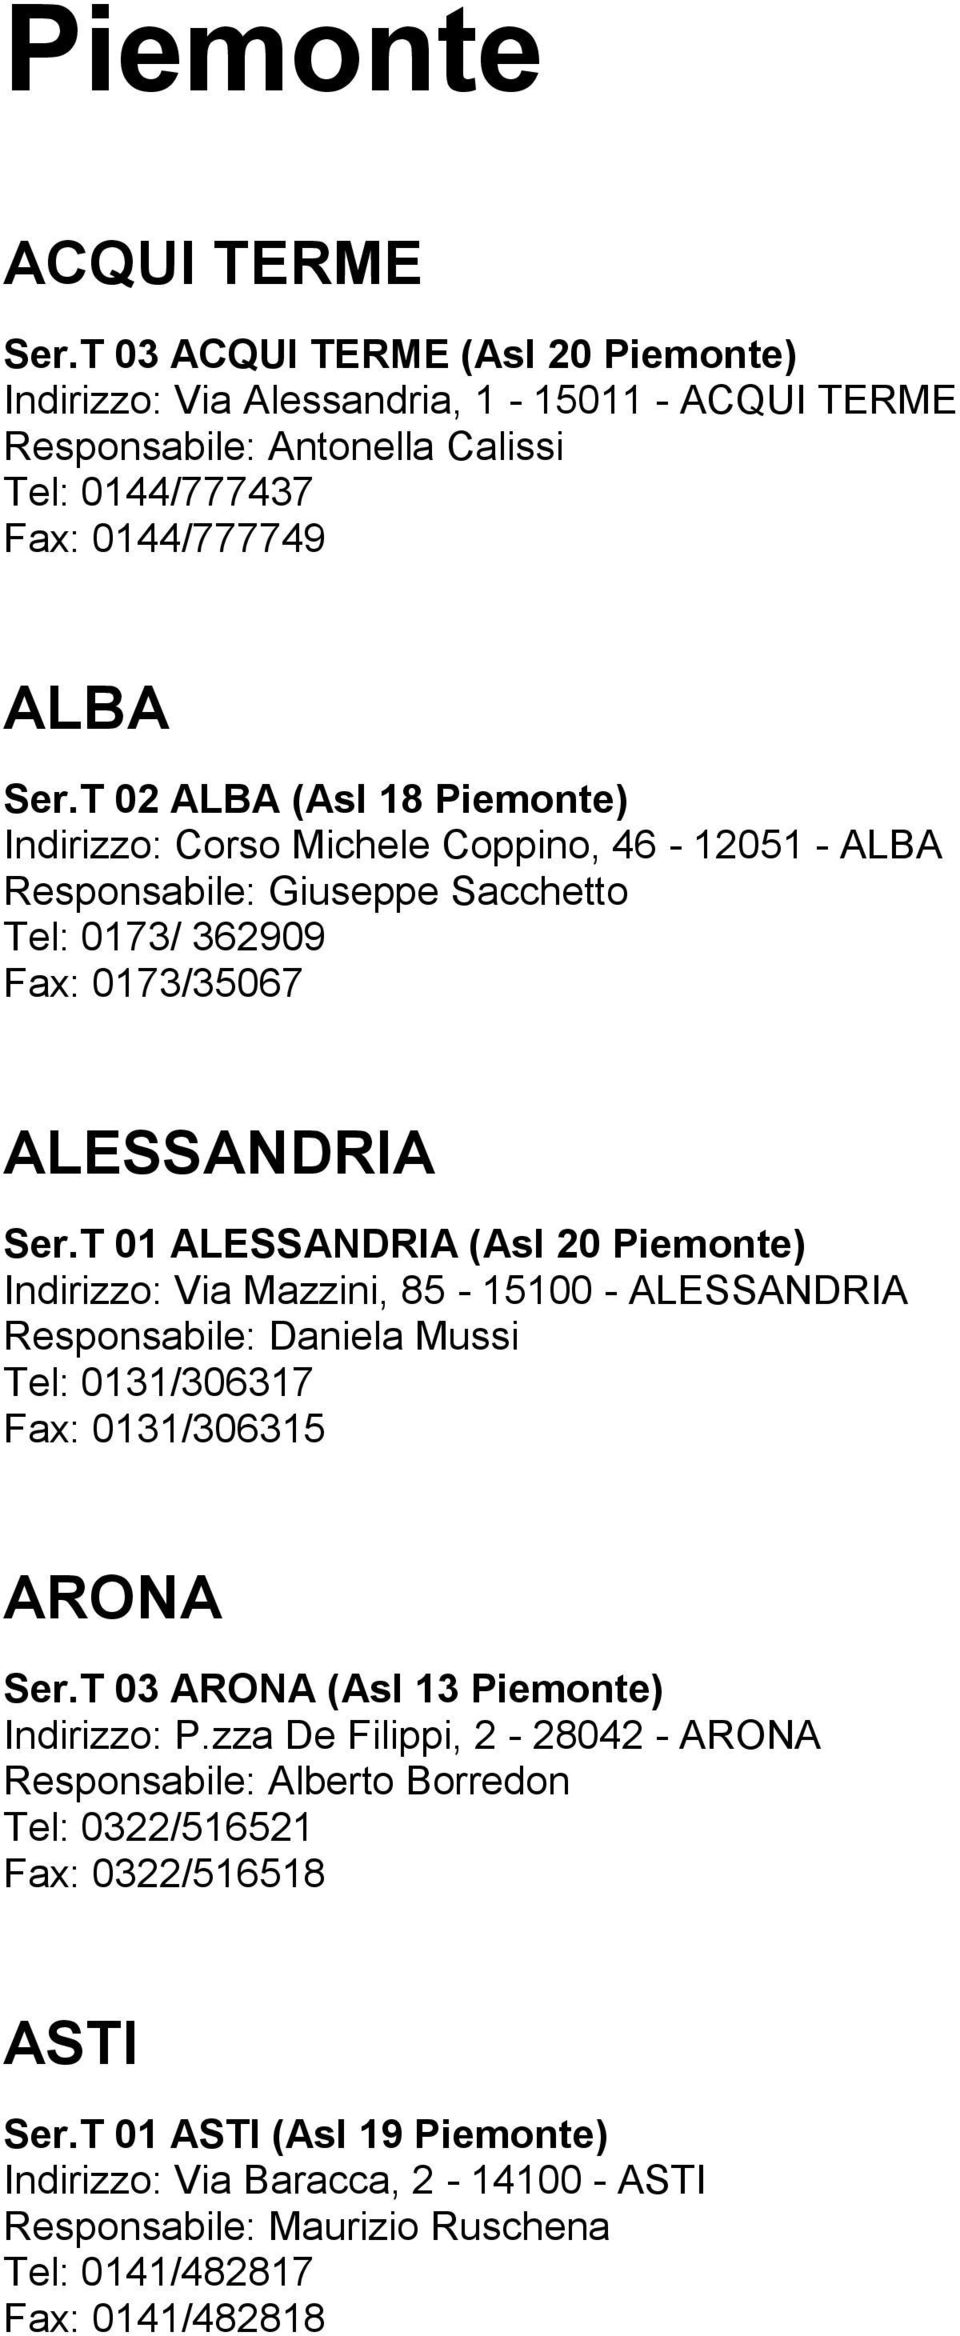 T 01 ALESSANDRIA (Asl 20 Piemonte) Indirizzo: Via Mazzini, 85-15100 - ALESSANDRIA Responsabile: Daniela Mussi Tel: 0131/306317 Fax: 0131/306315 ARONA Ser.